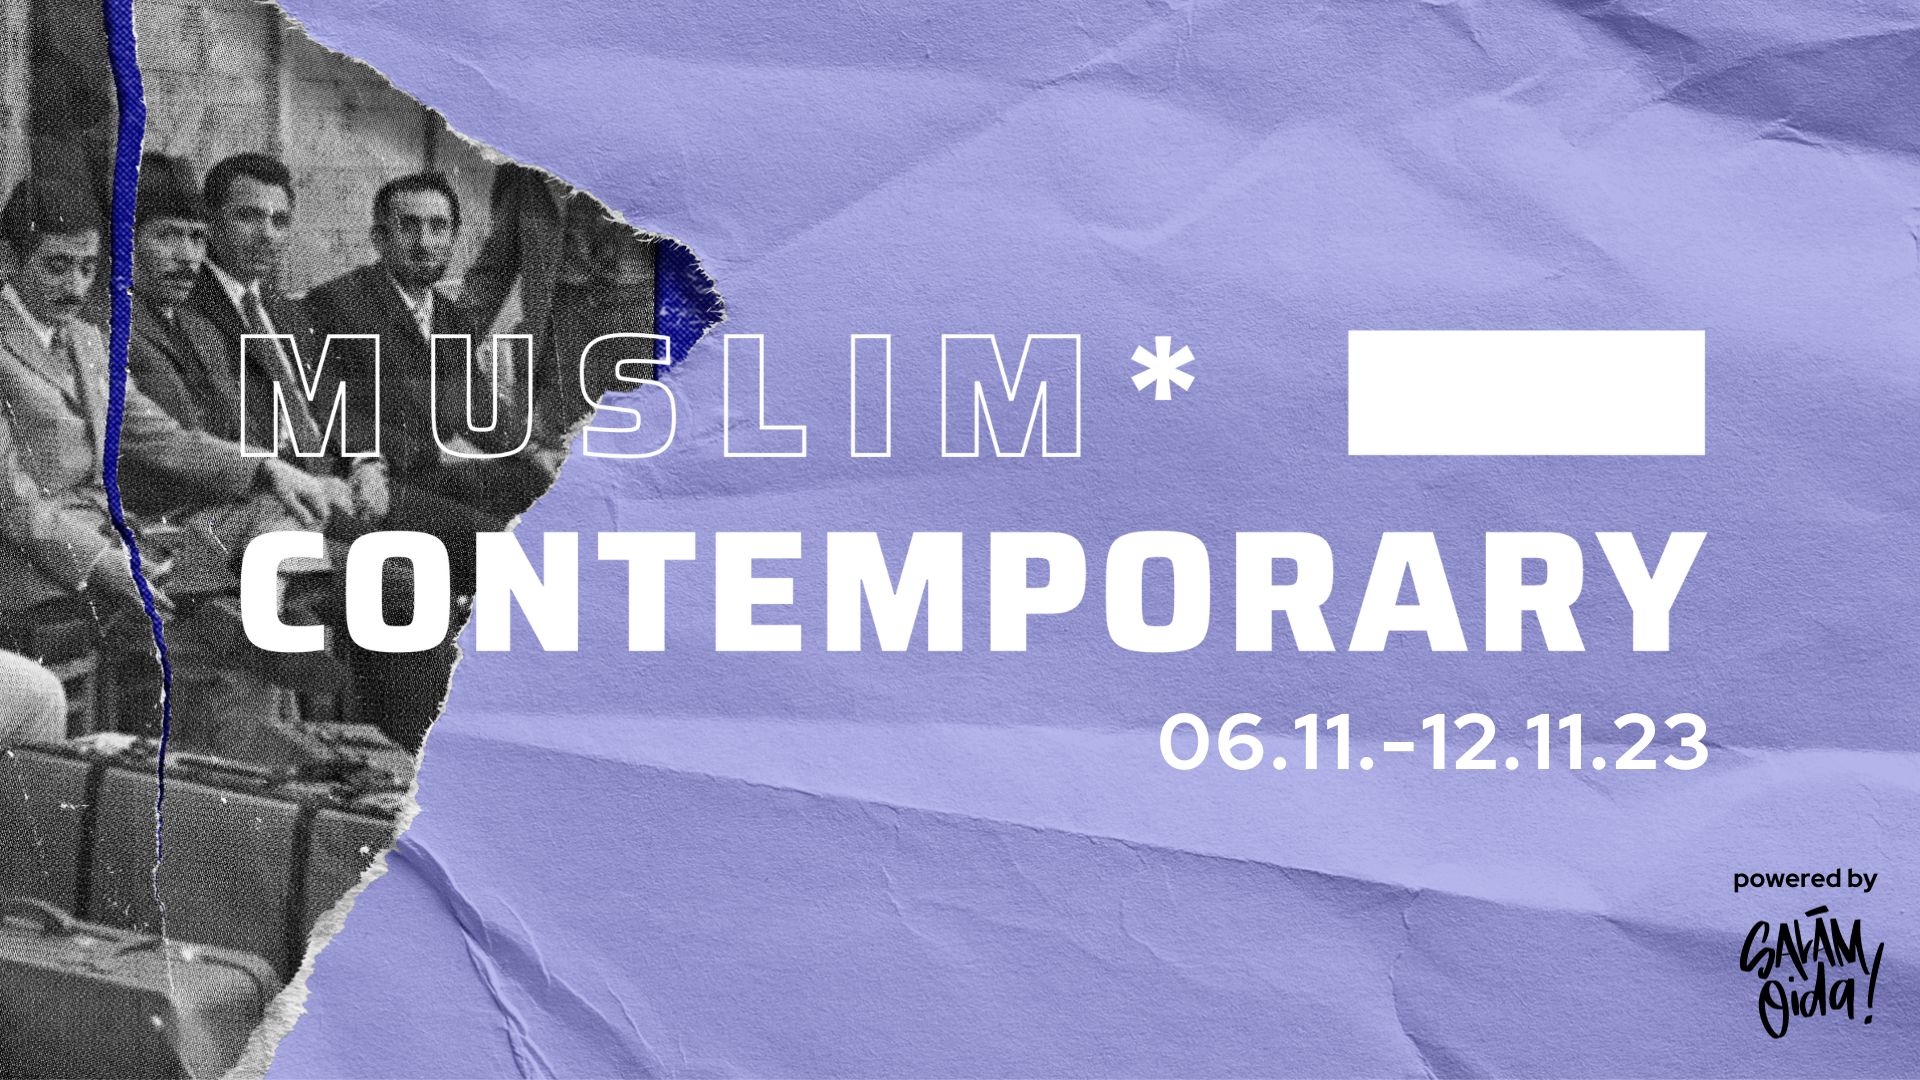 Muslim*Contemporary 2023 I „Von Gästen zu Gastgebenden - War das jetzt unfreundlich?!“